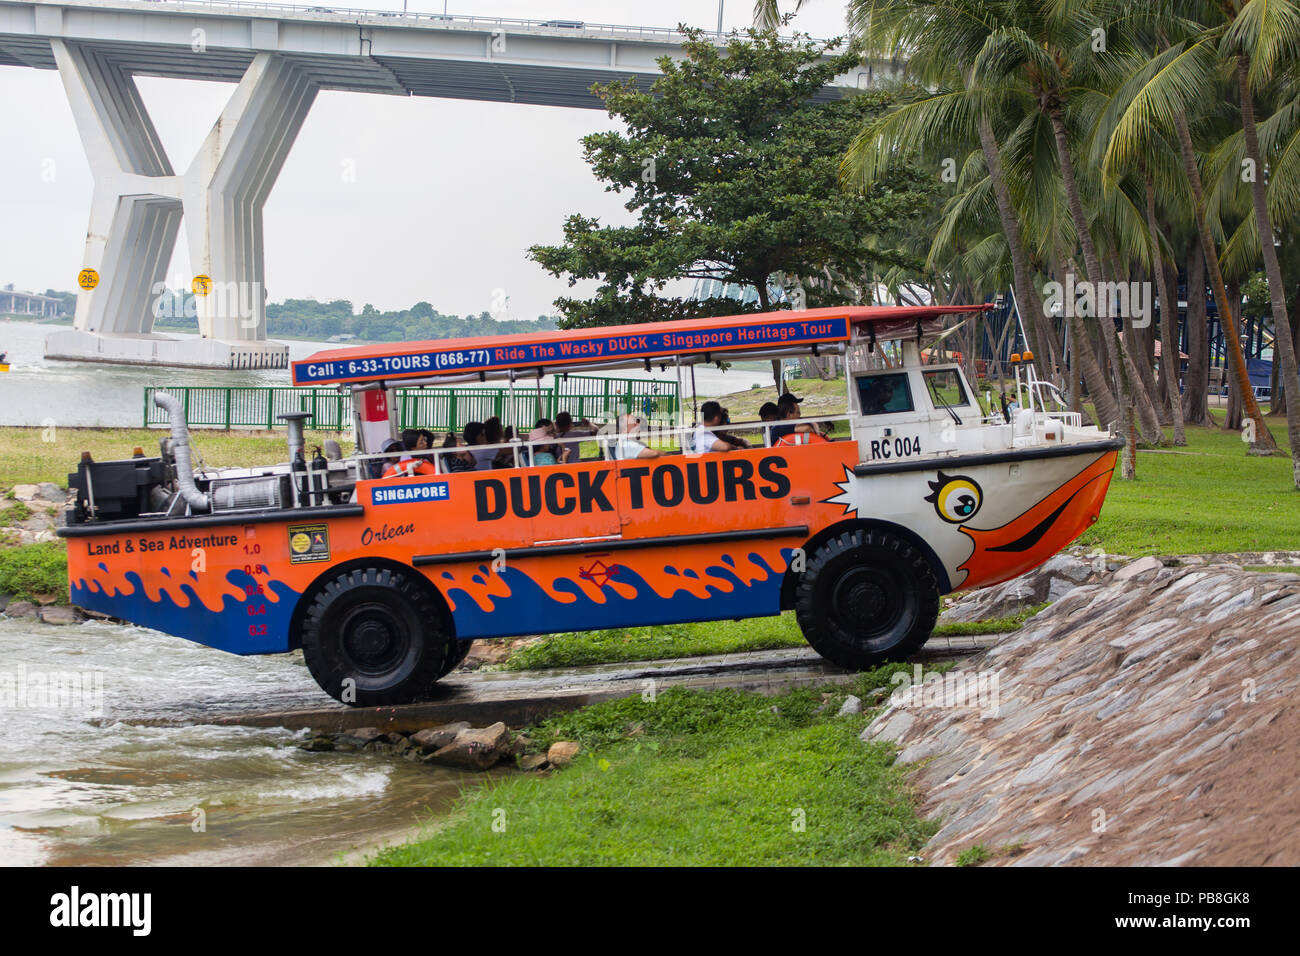 Duck Tours in Singapore per i turisti che desiderano esplorare la vista di Singapore attraverso il fiume. Foto Stock